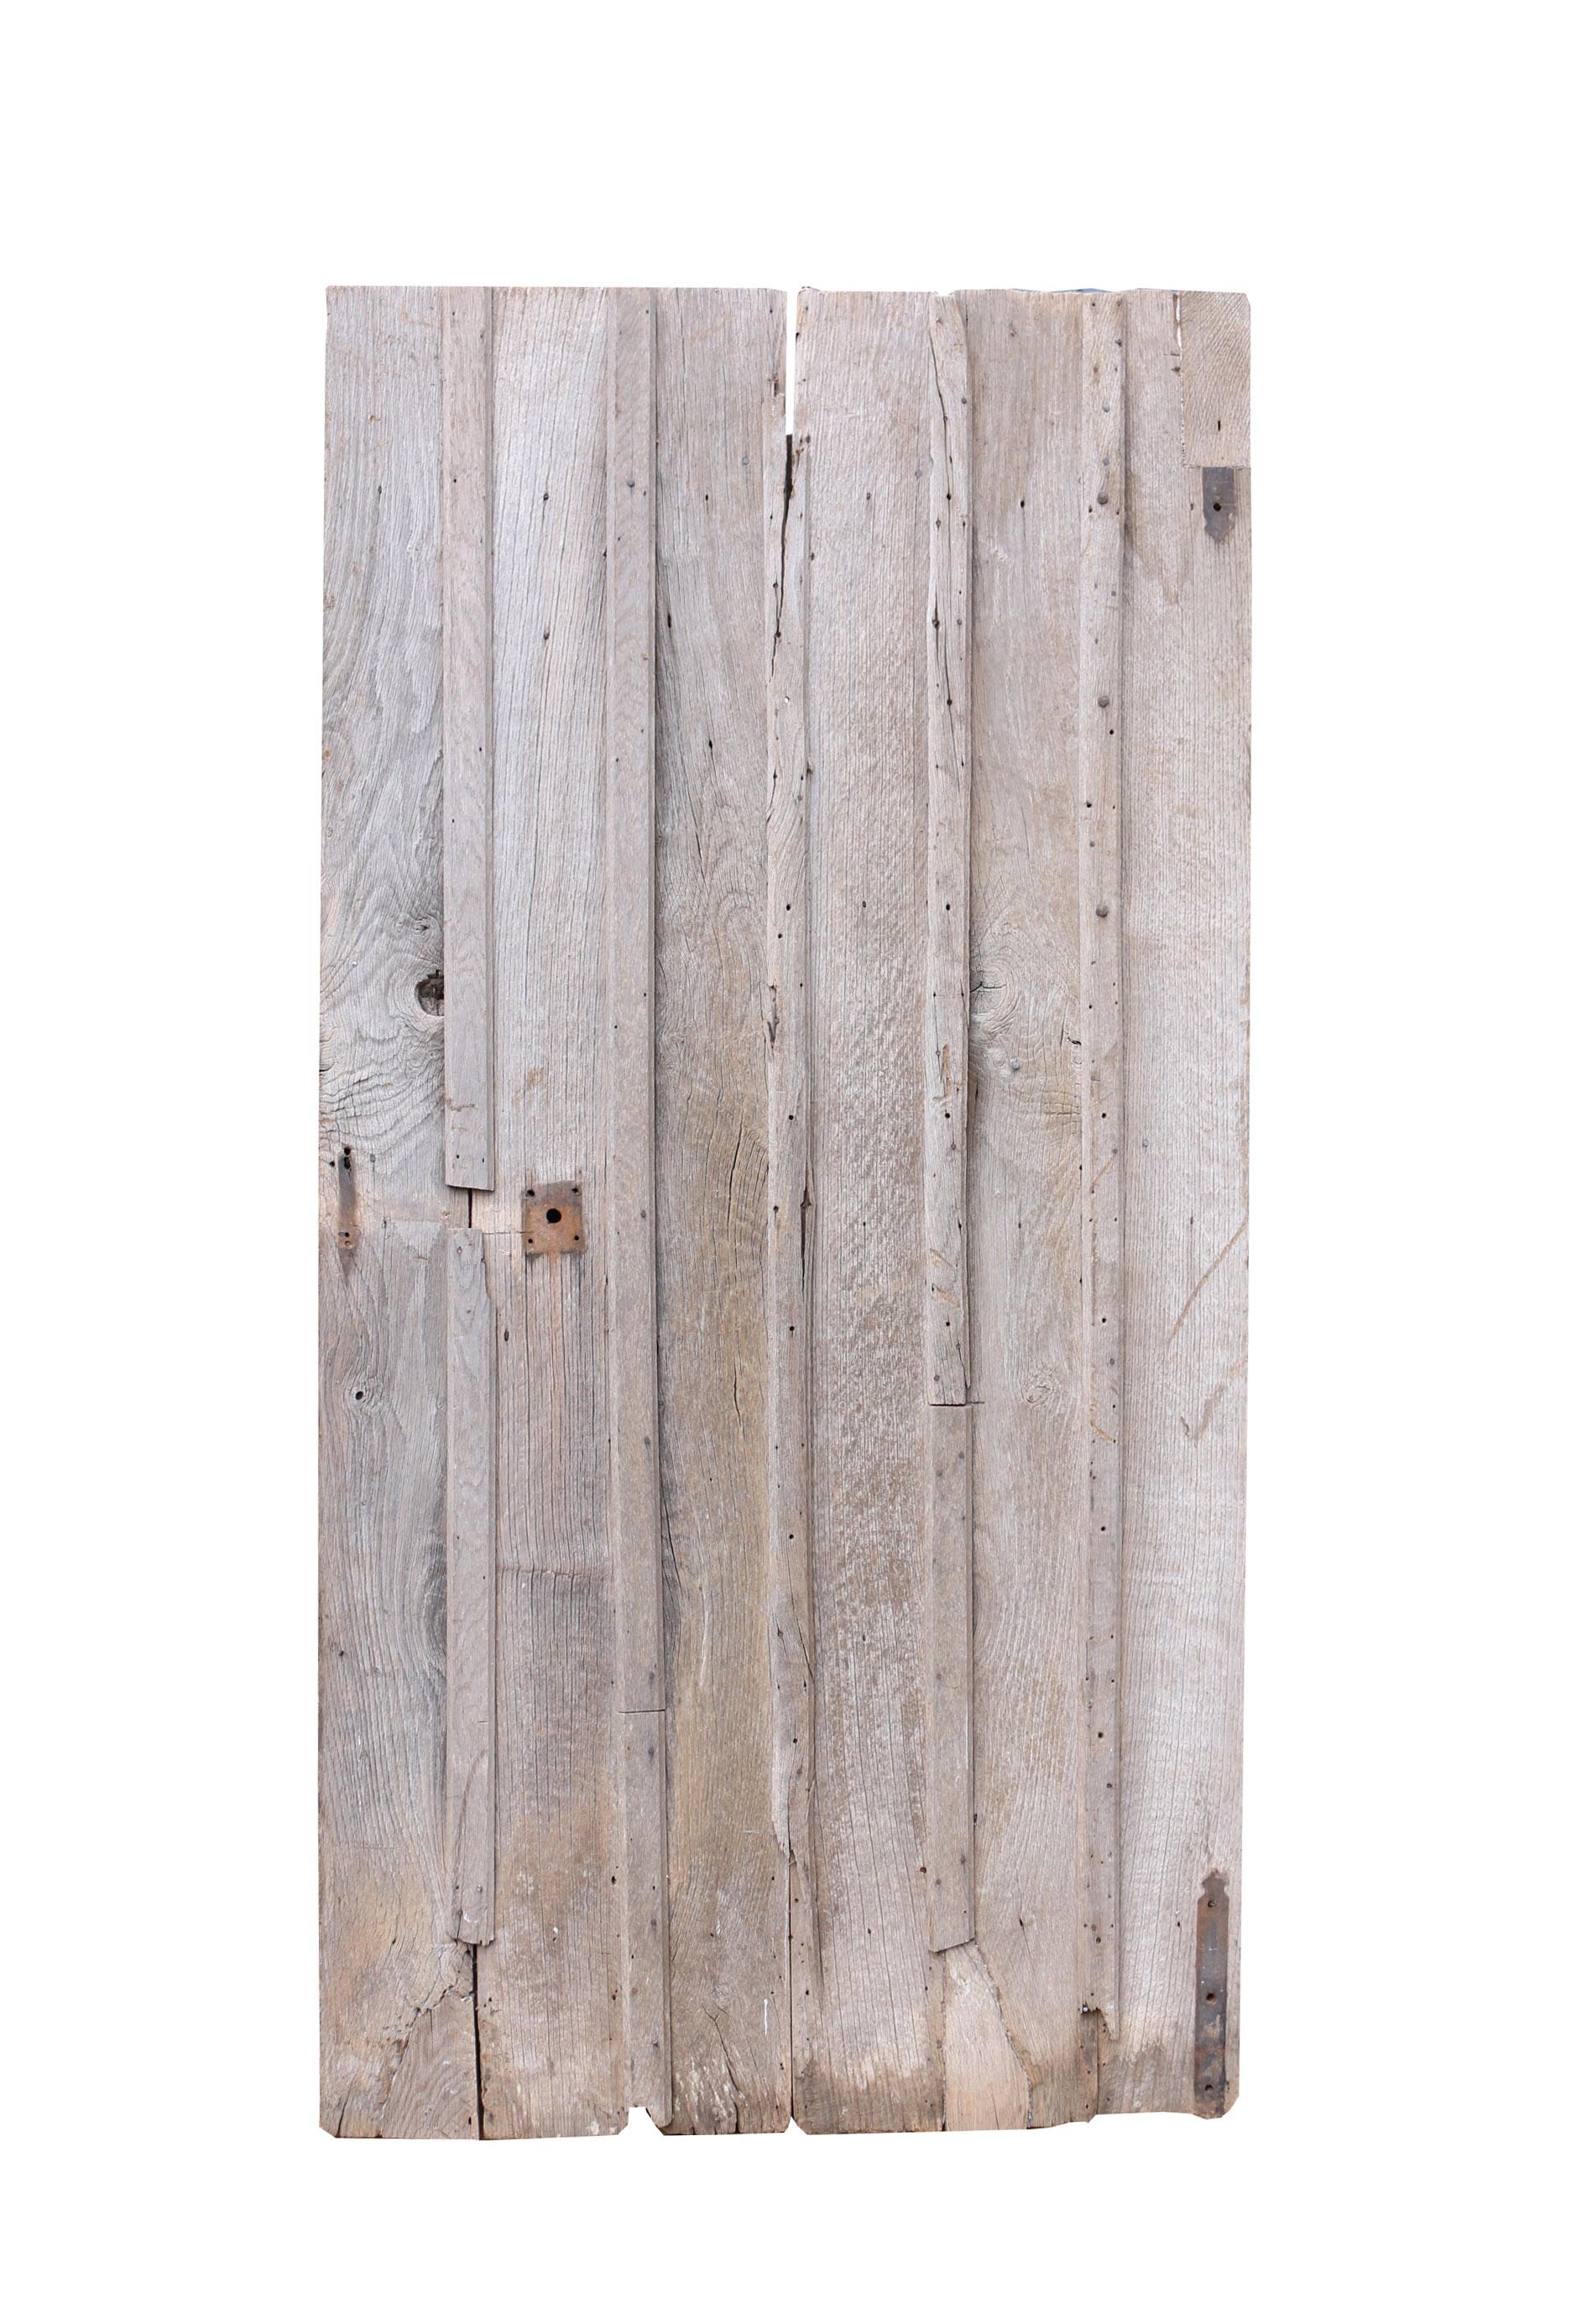 Porte de ferme rustique ancienne en chêne avec planches de bois Bon état - En vente à Wormelow, Herefordshire